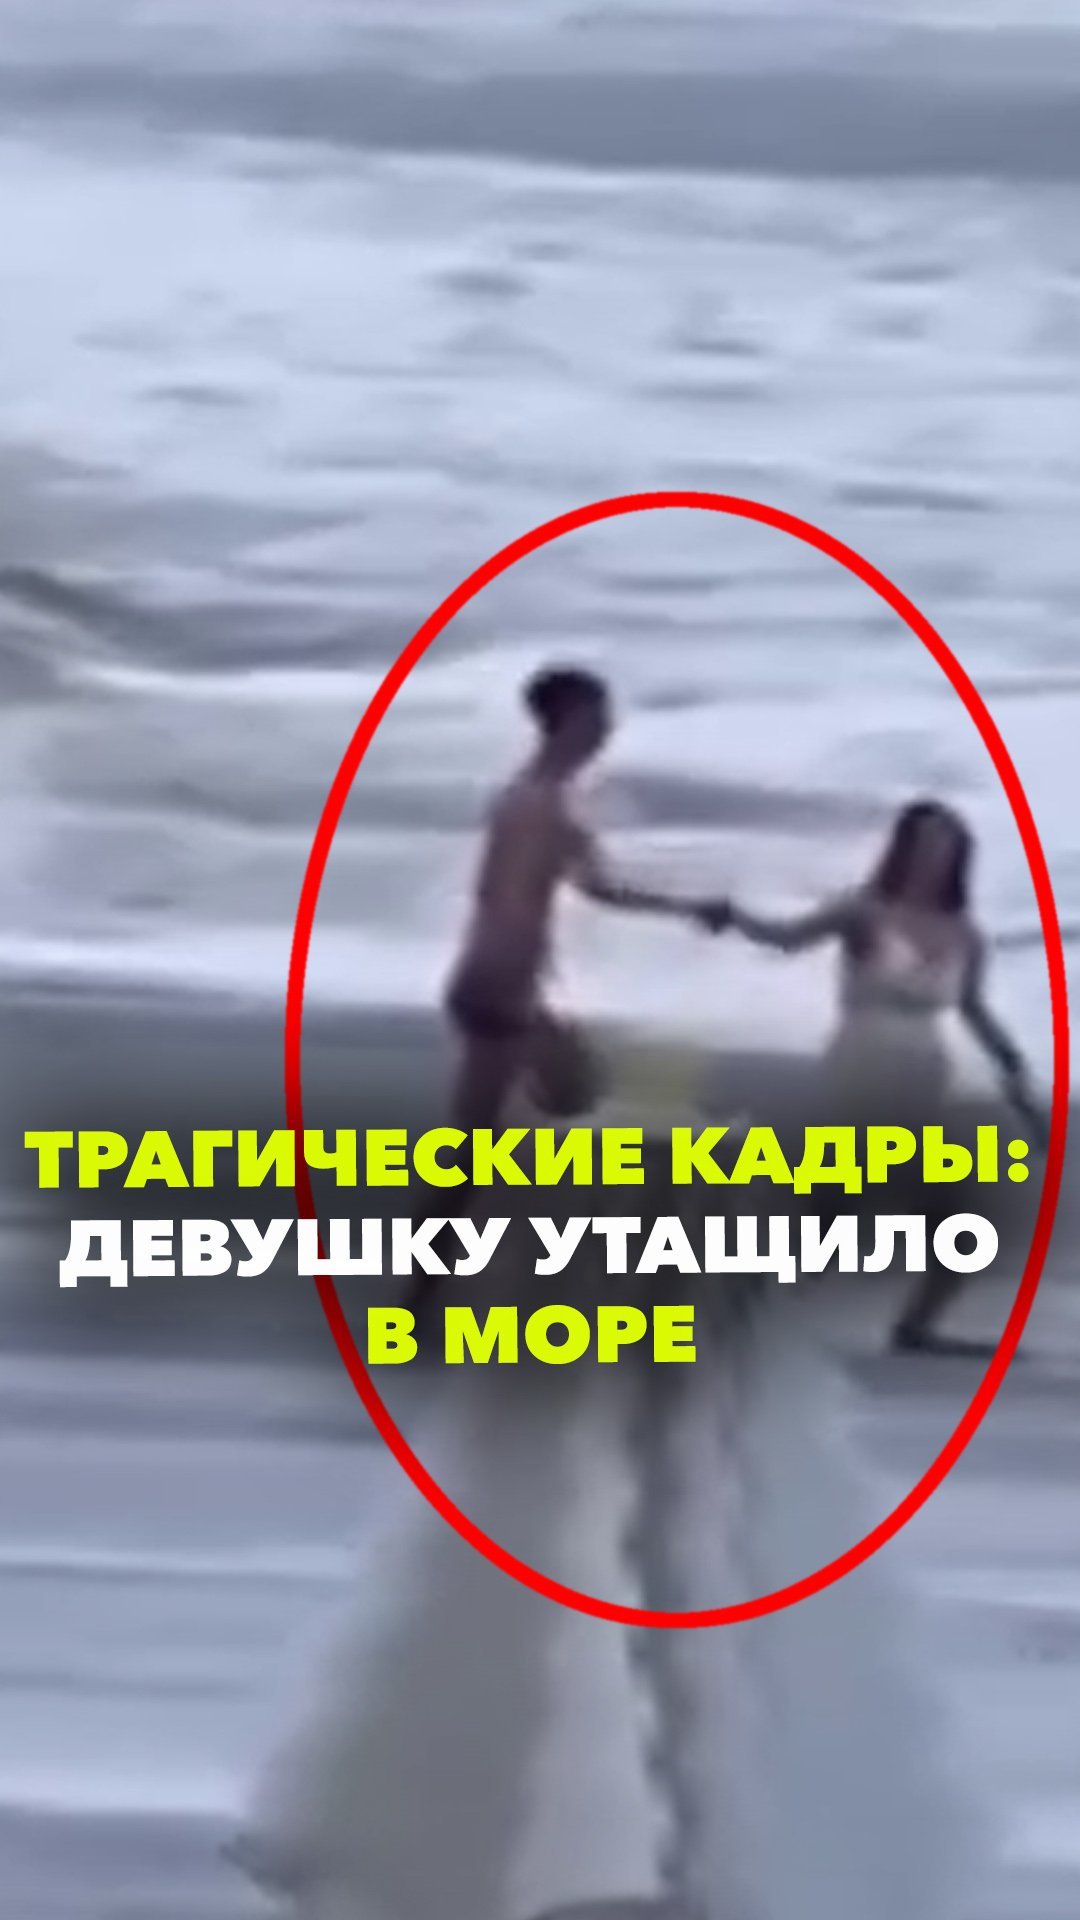 Девушку унесло в море во время прогулки с парнем. Момент трагедии попал на видео